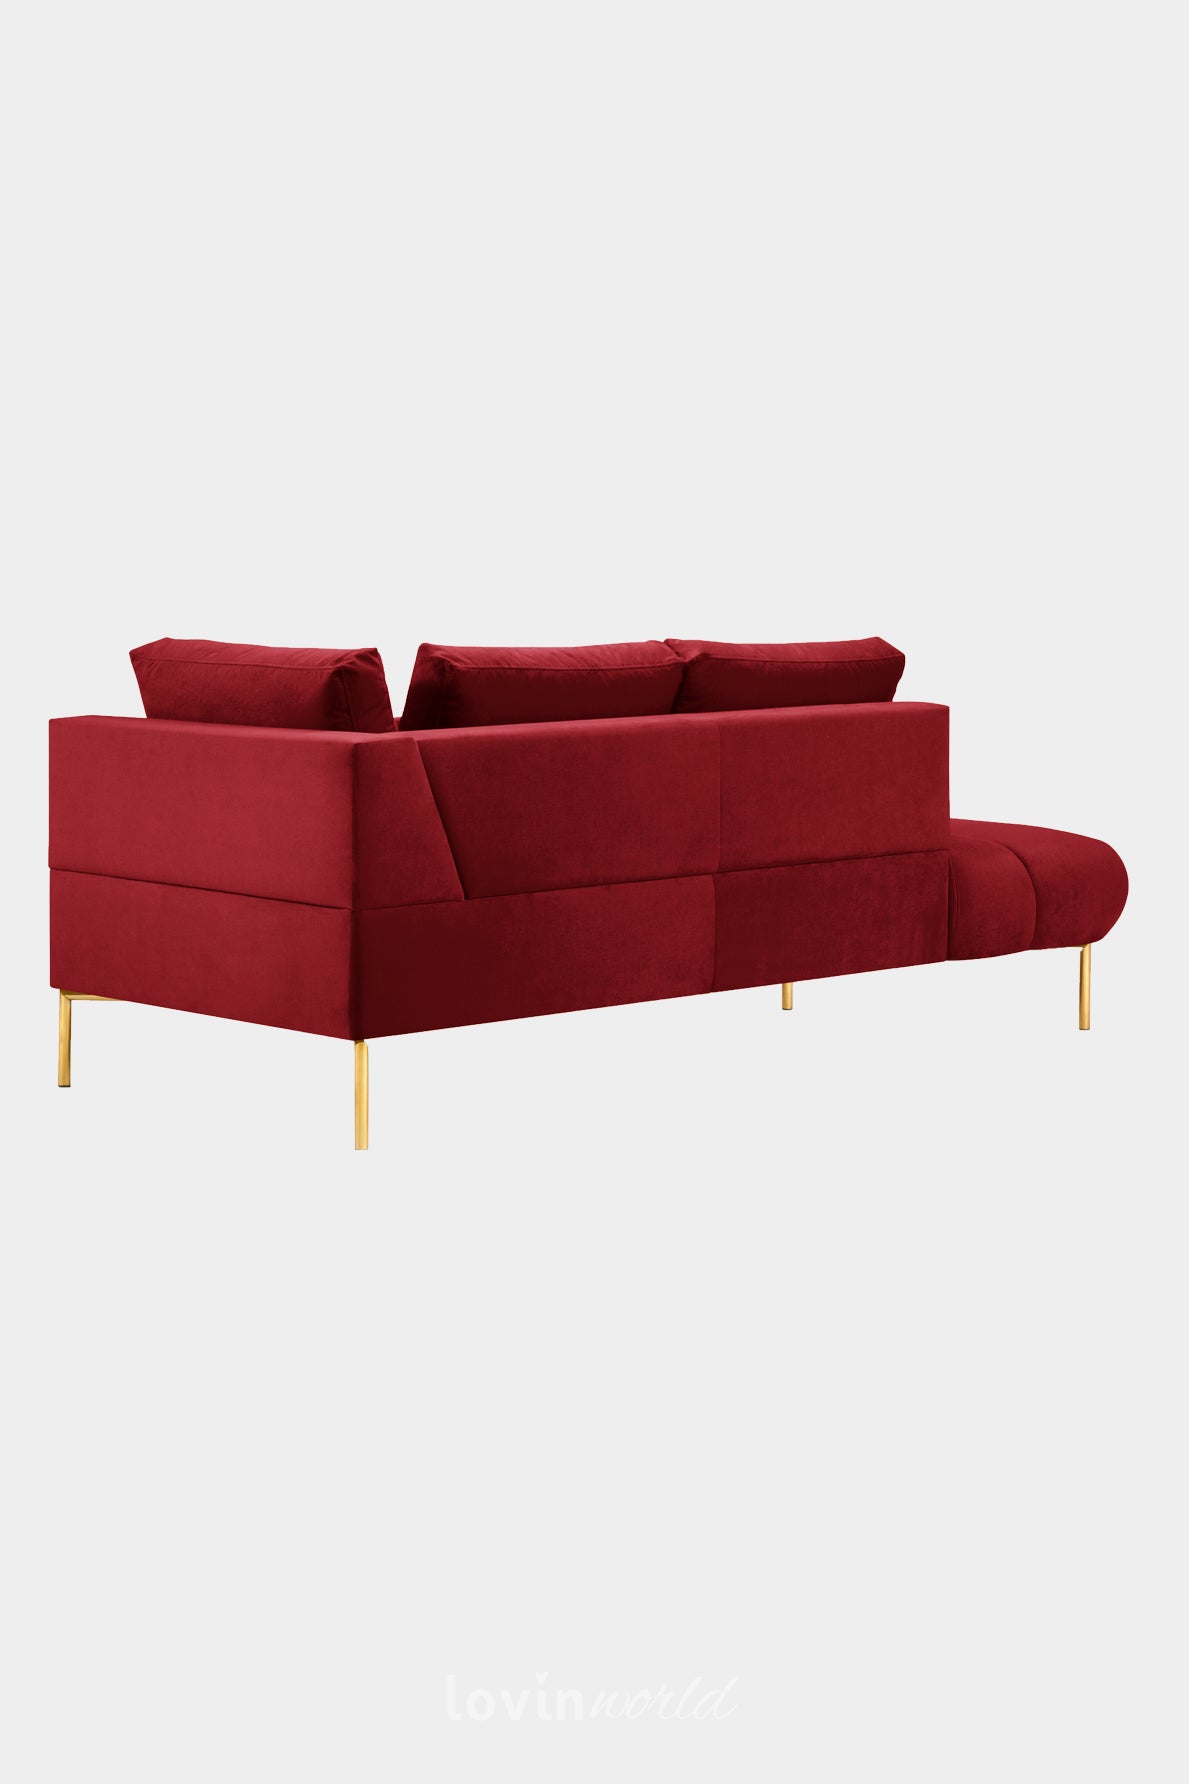 Chaise longue Malvin, in velluto rosso con gambe dorate-LovinWorld